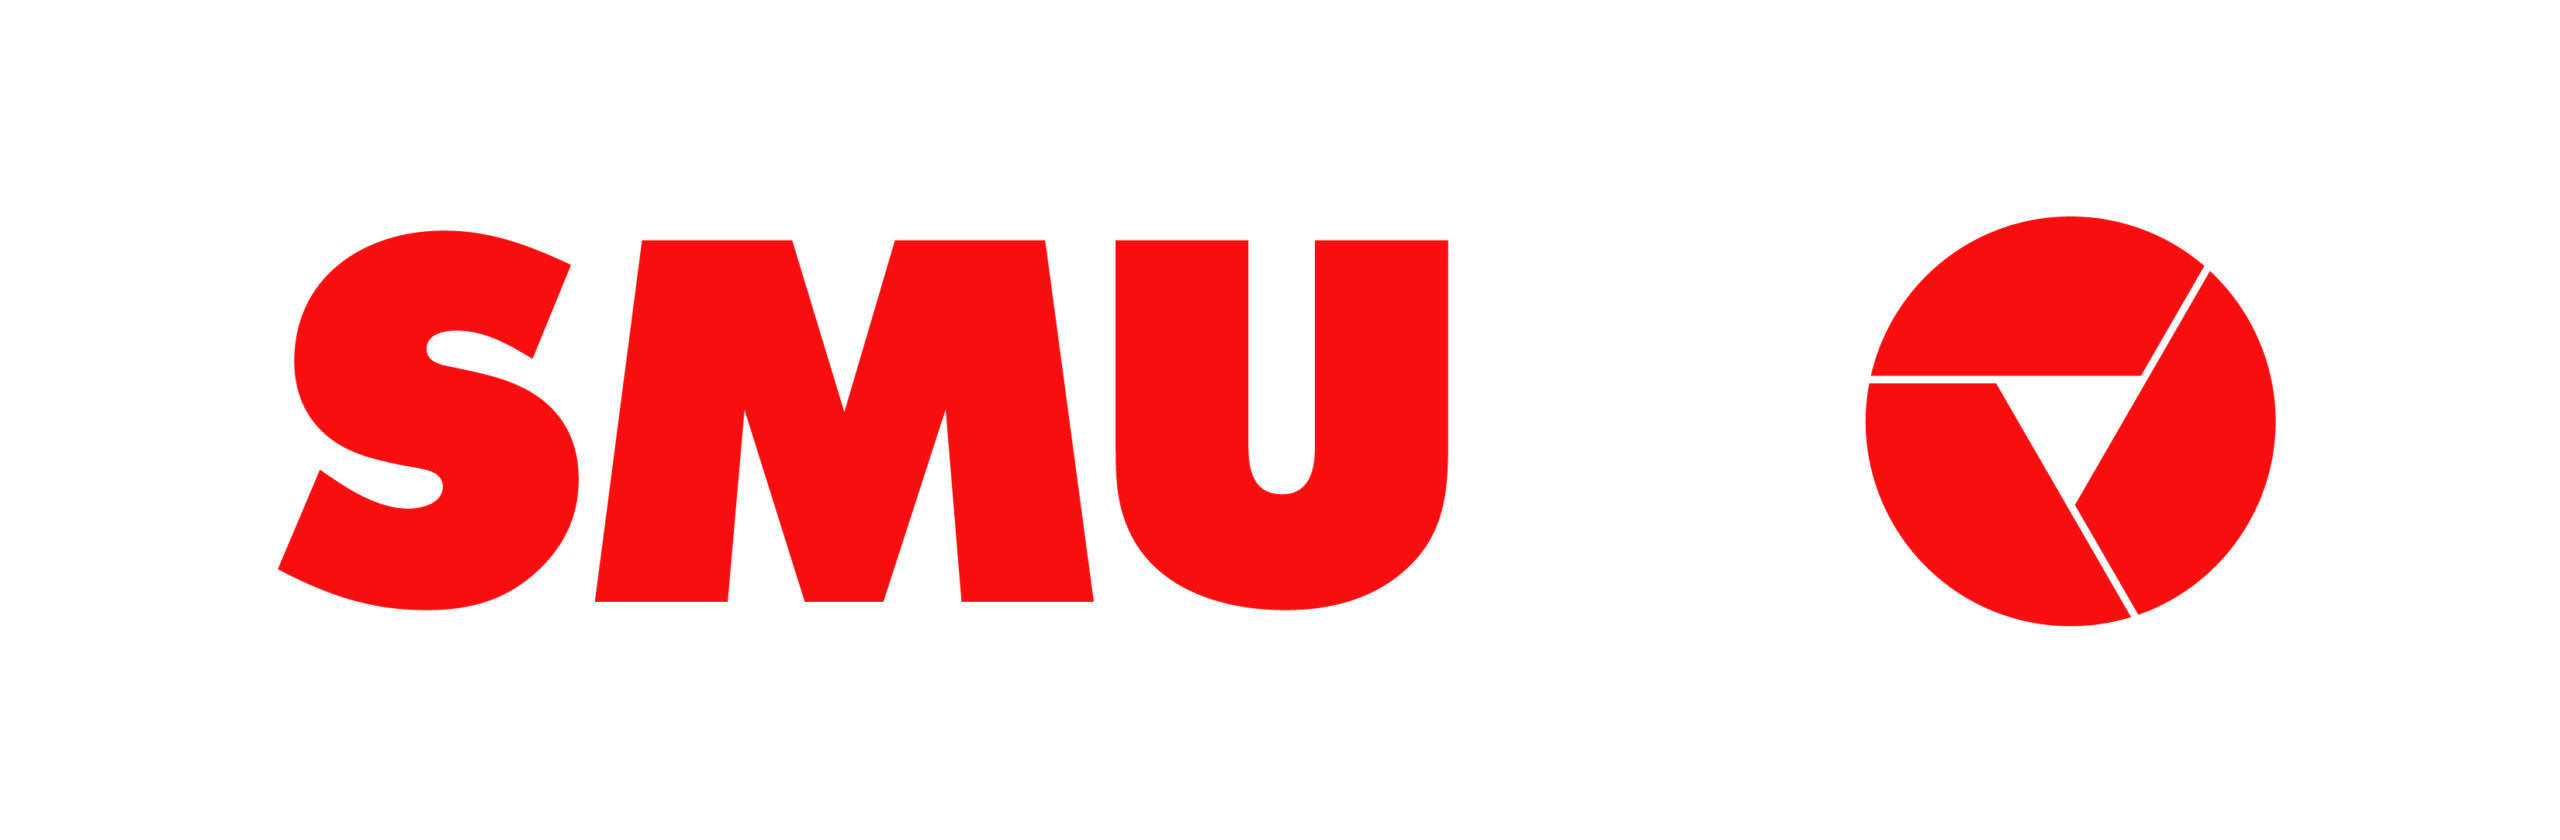 SMU_logo-01